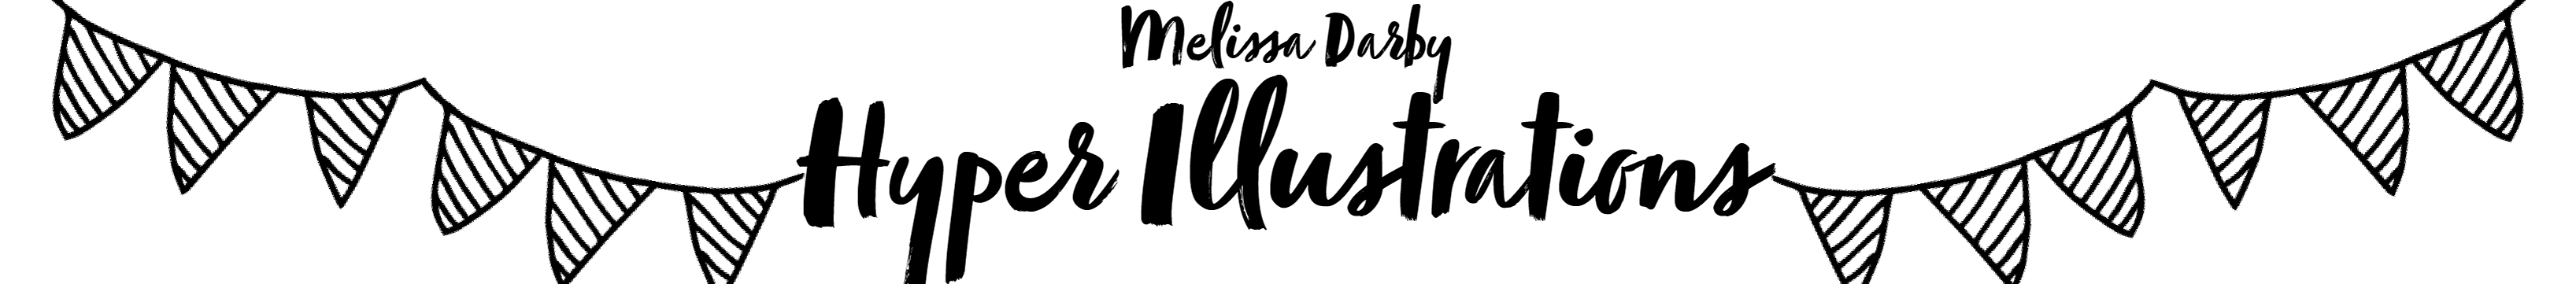 Profil-Banner von Melissa Darby